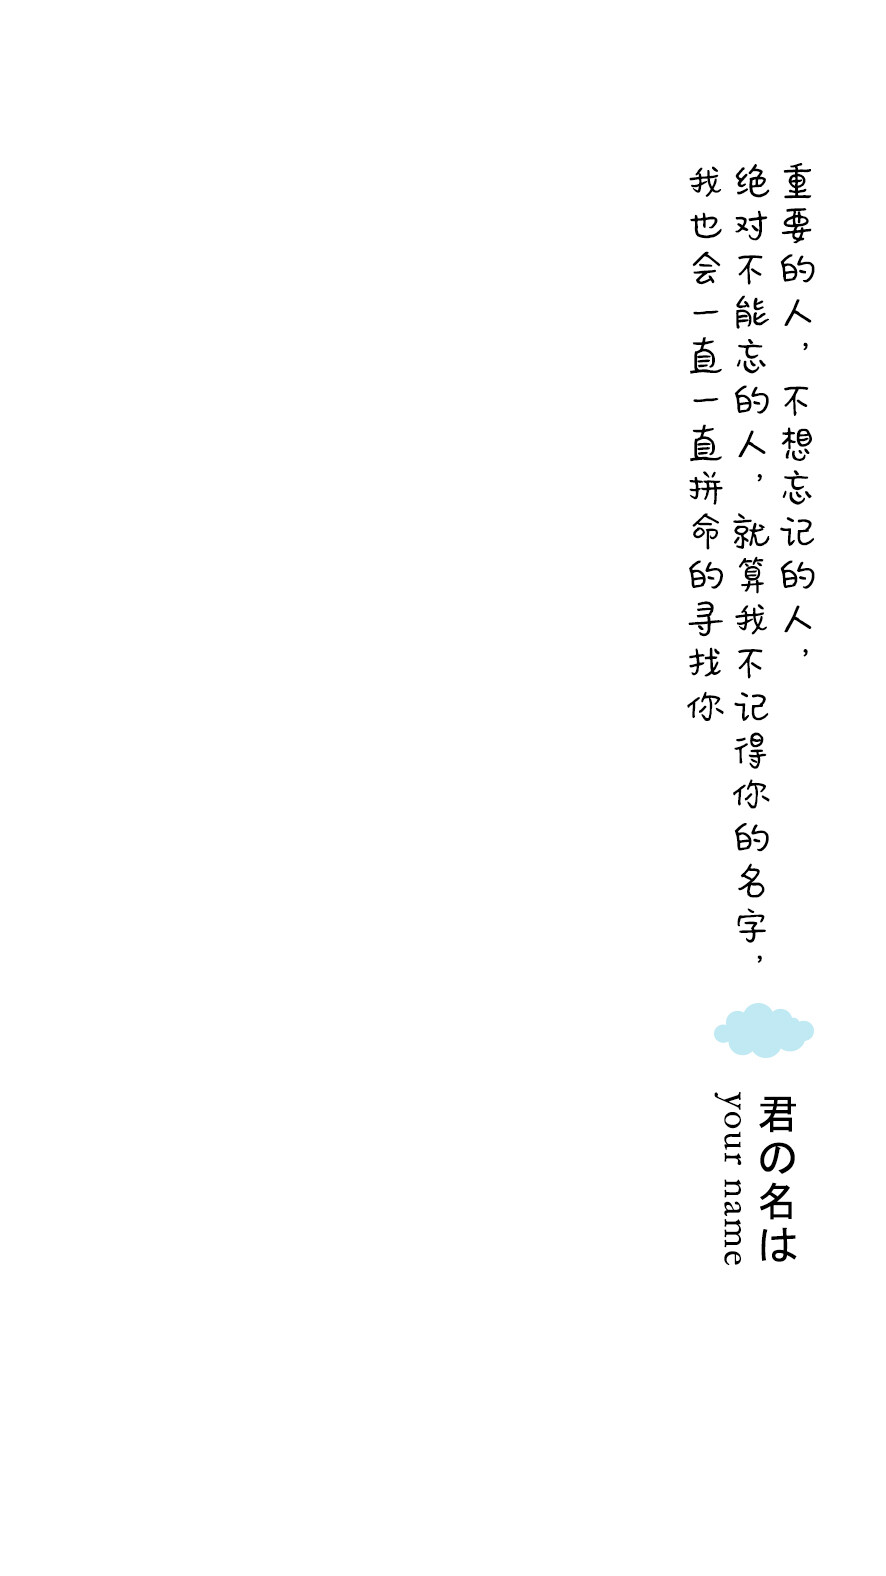 《你的名字》陶子苏苏文字壁纸系列